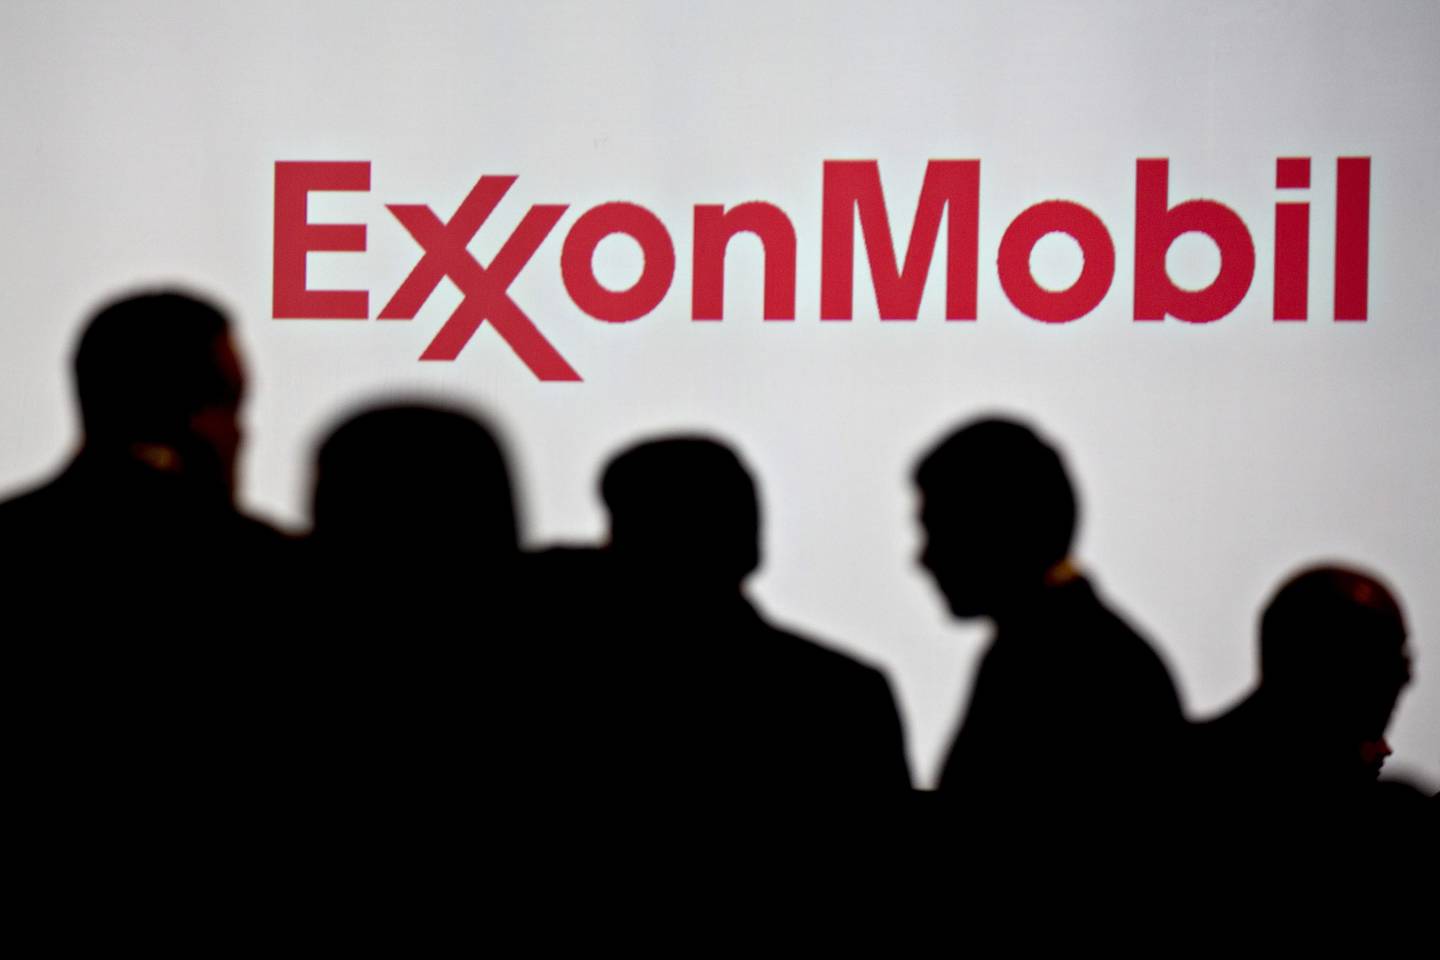 Personas permanecen cerca de la señalización de Exxon Mobil Corp. durante la Conferencia Mundial del Gas en Washington, D.C., Estados Unidos, el martes 26 de junio de 2018.